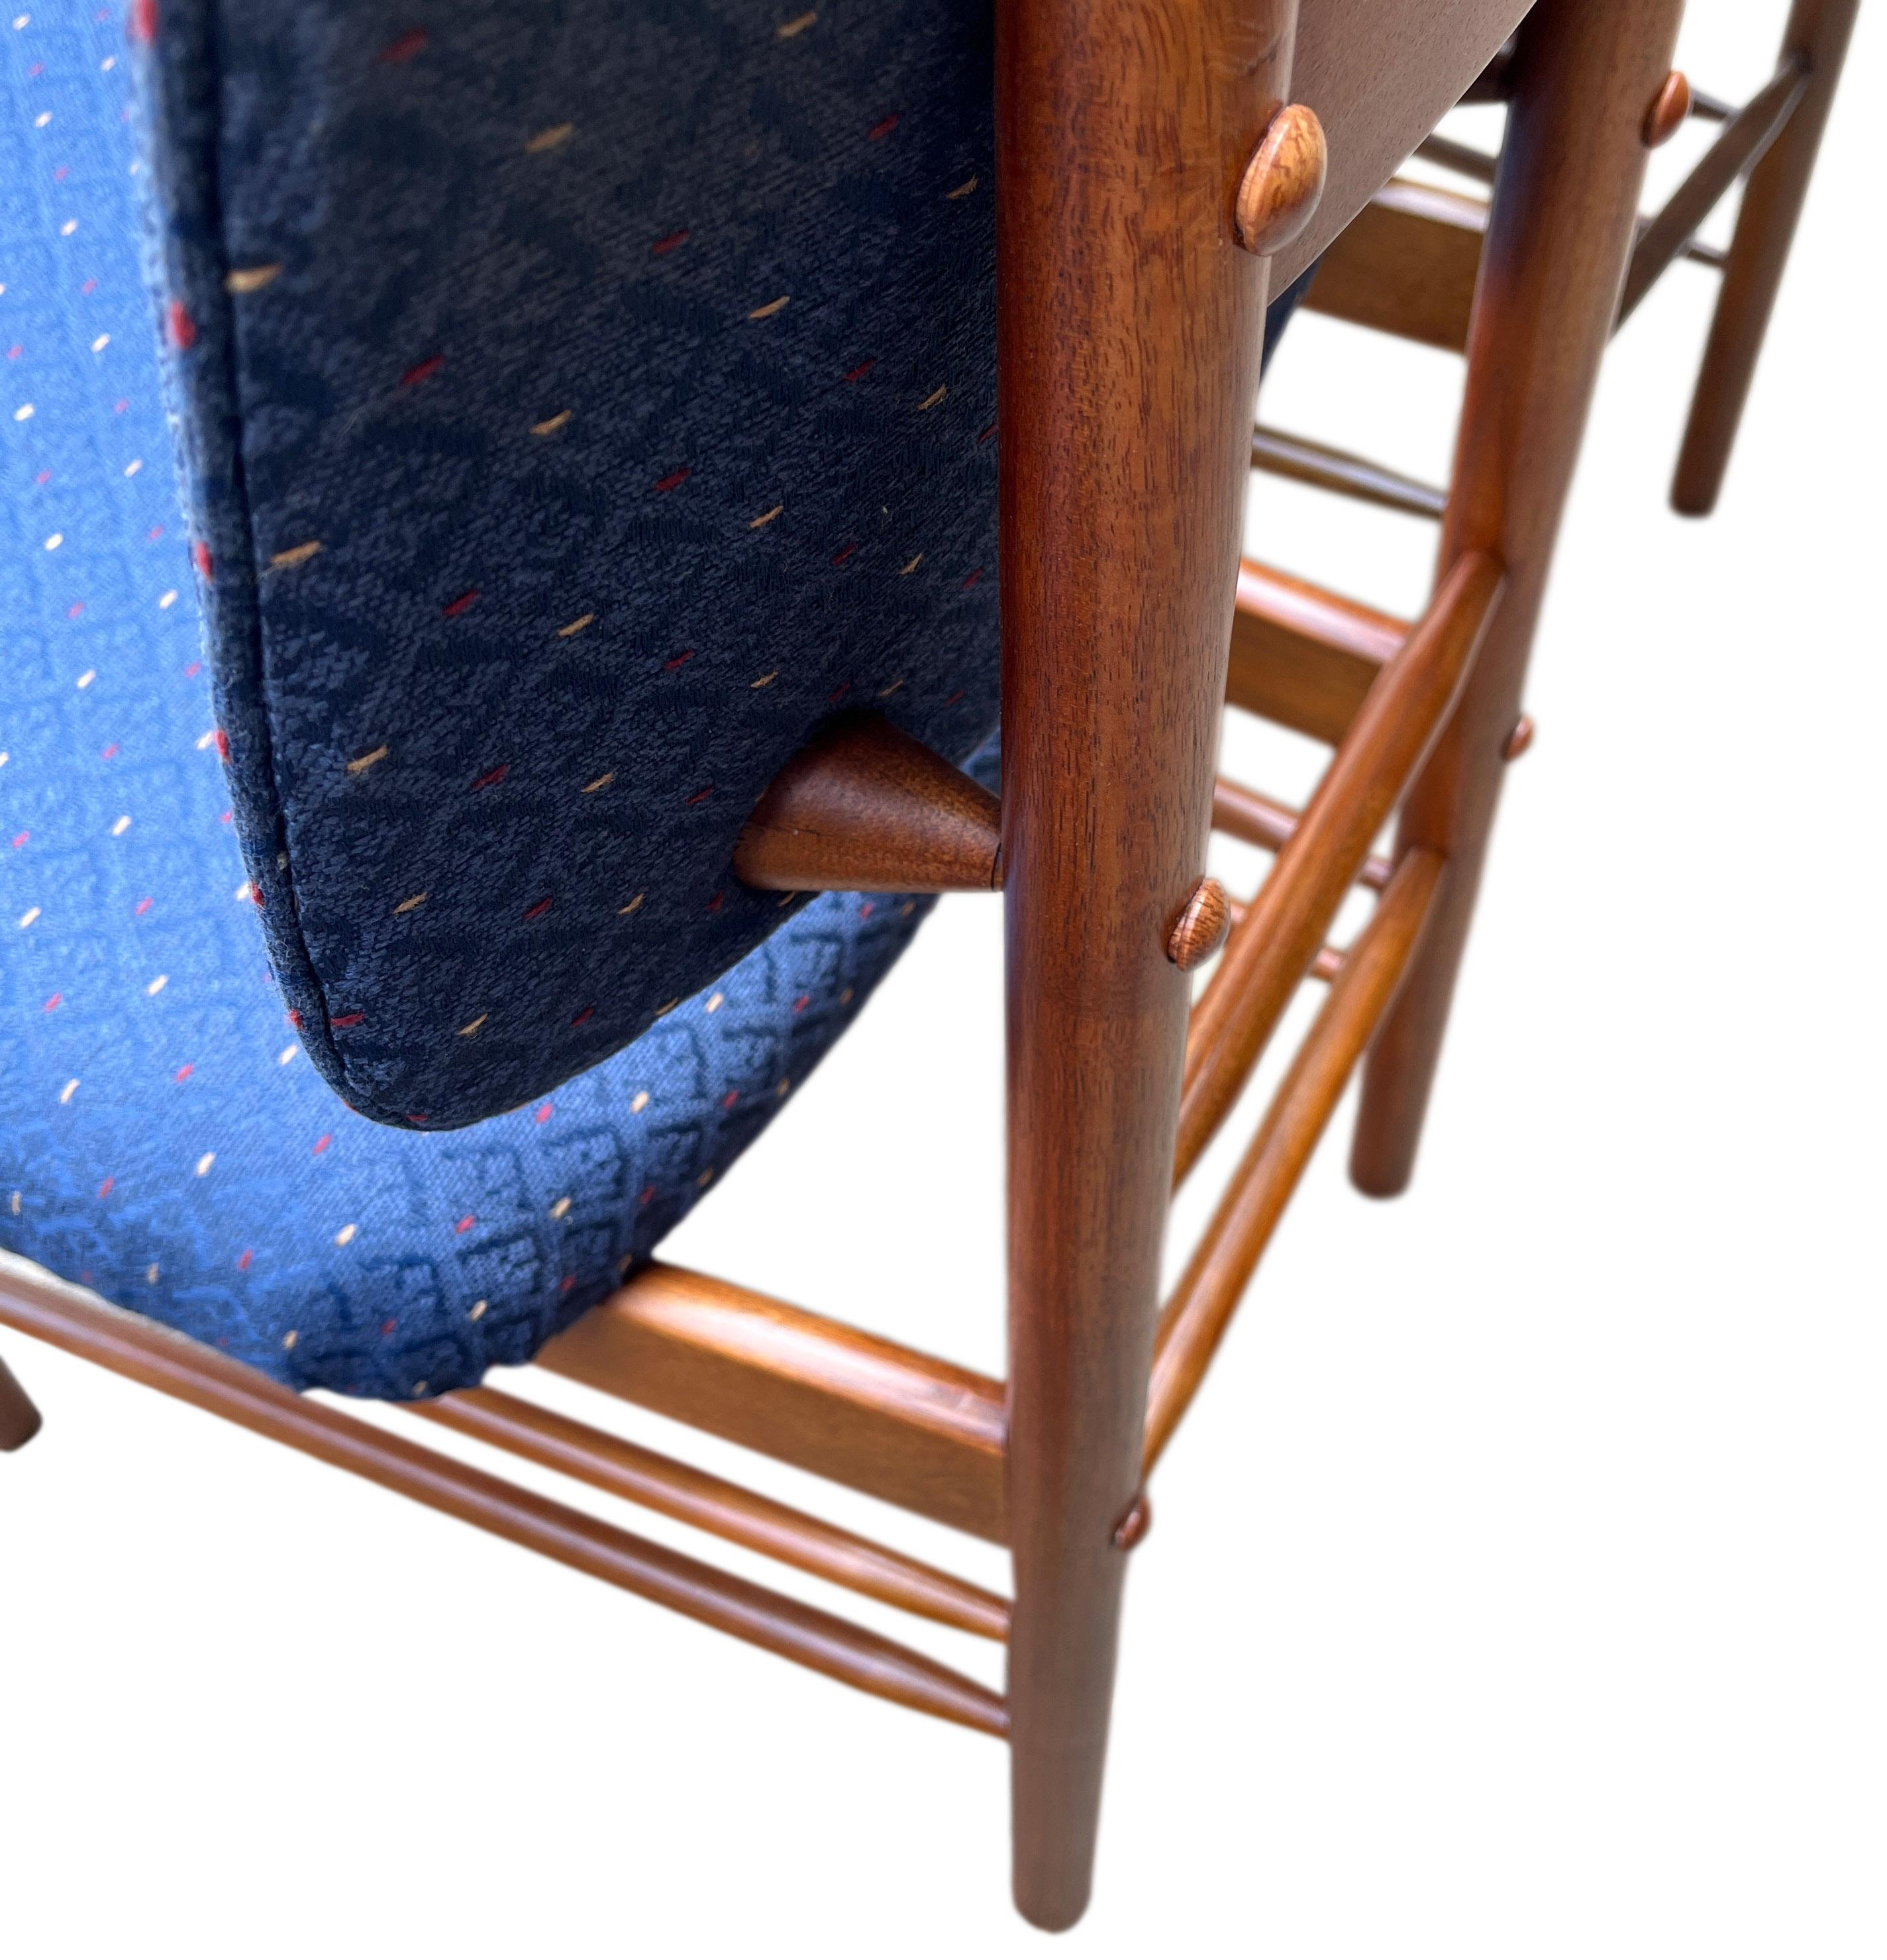 Spektakulärer Satz von vier Esszimmerstühlen von Greta Magnusson Grossman. Für diesen Stuhl wurde sie vom Museum of Modern Art, New York, mit dem Good Design Award ausgezeichnet, und wir können verstehen, warum. Äußerst bequem, robust und schön